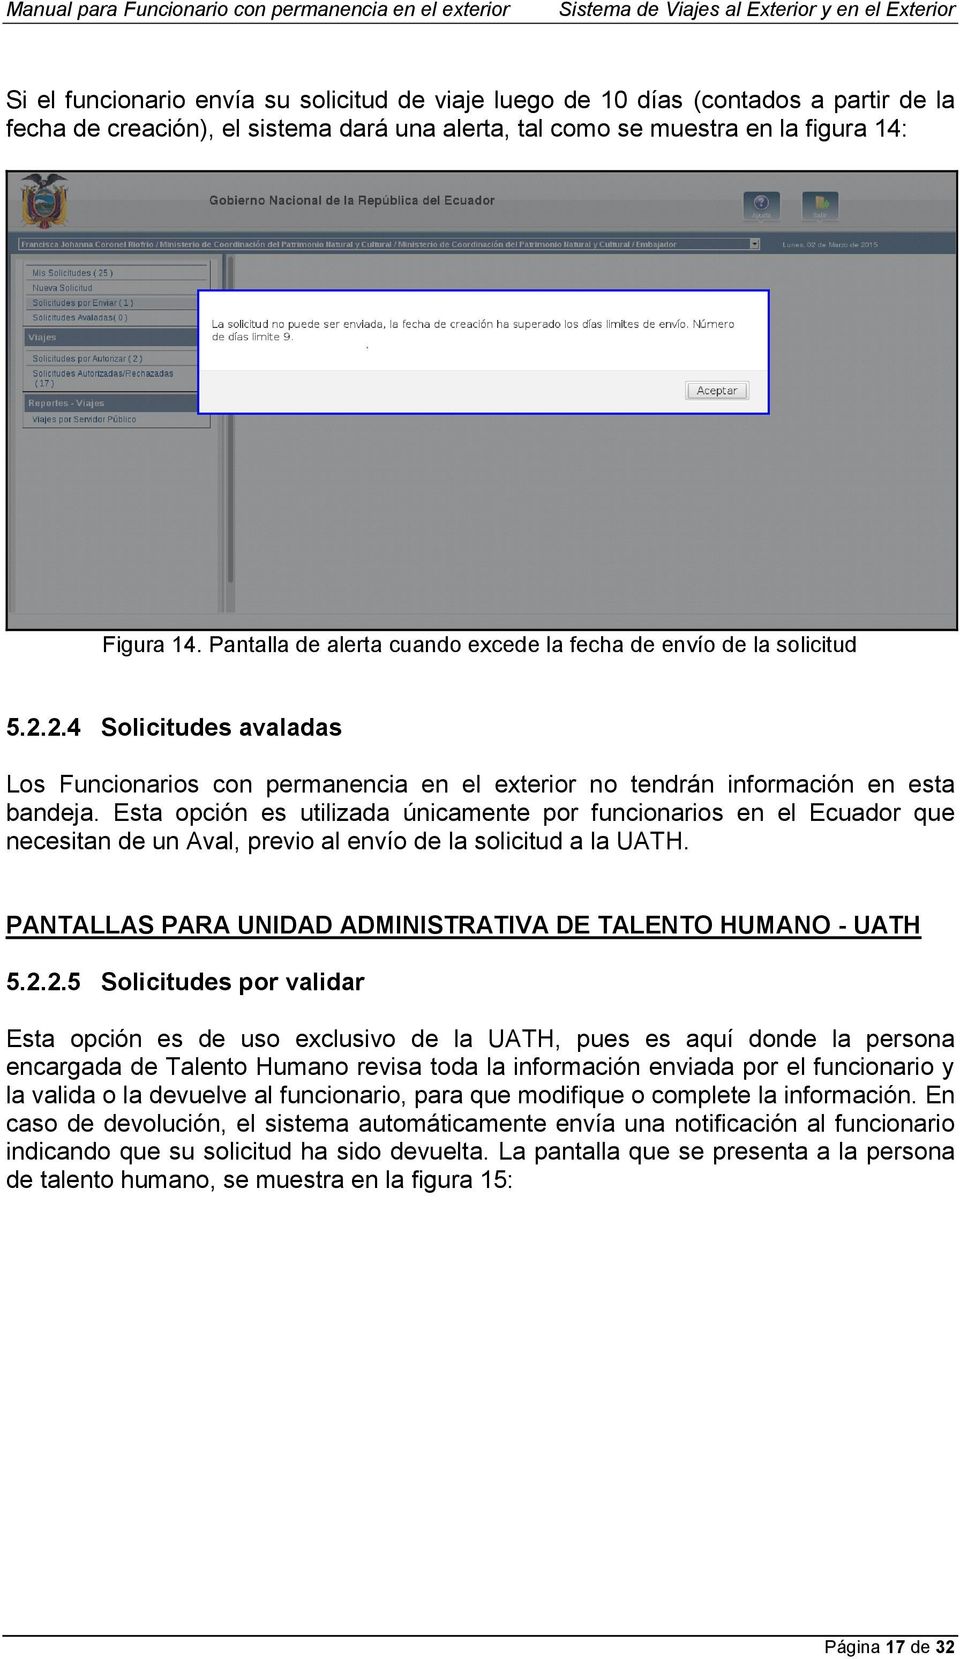 Esta opción es utilizada únicamente por funcionarios en el Ecuador que necesitan de un Aval, previo al envío de la solicitud a la UATH. PANTALLAS PARA UNIDAD ADMINISTRATIVA DE TALENTO HUMANO - UATH 5.